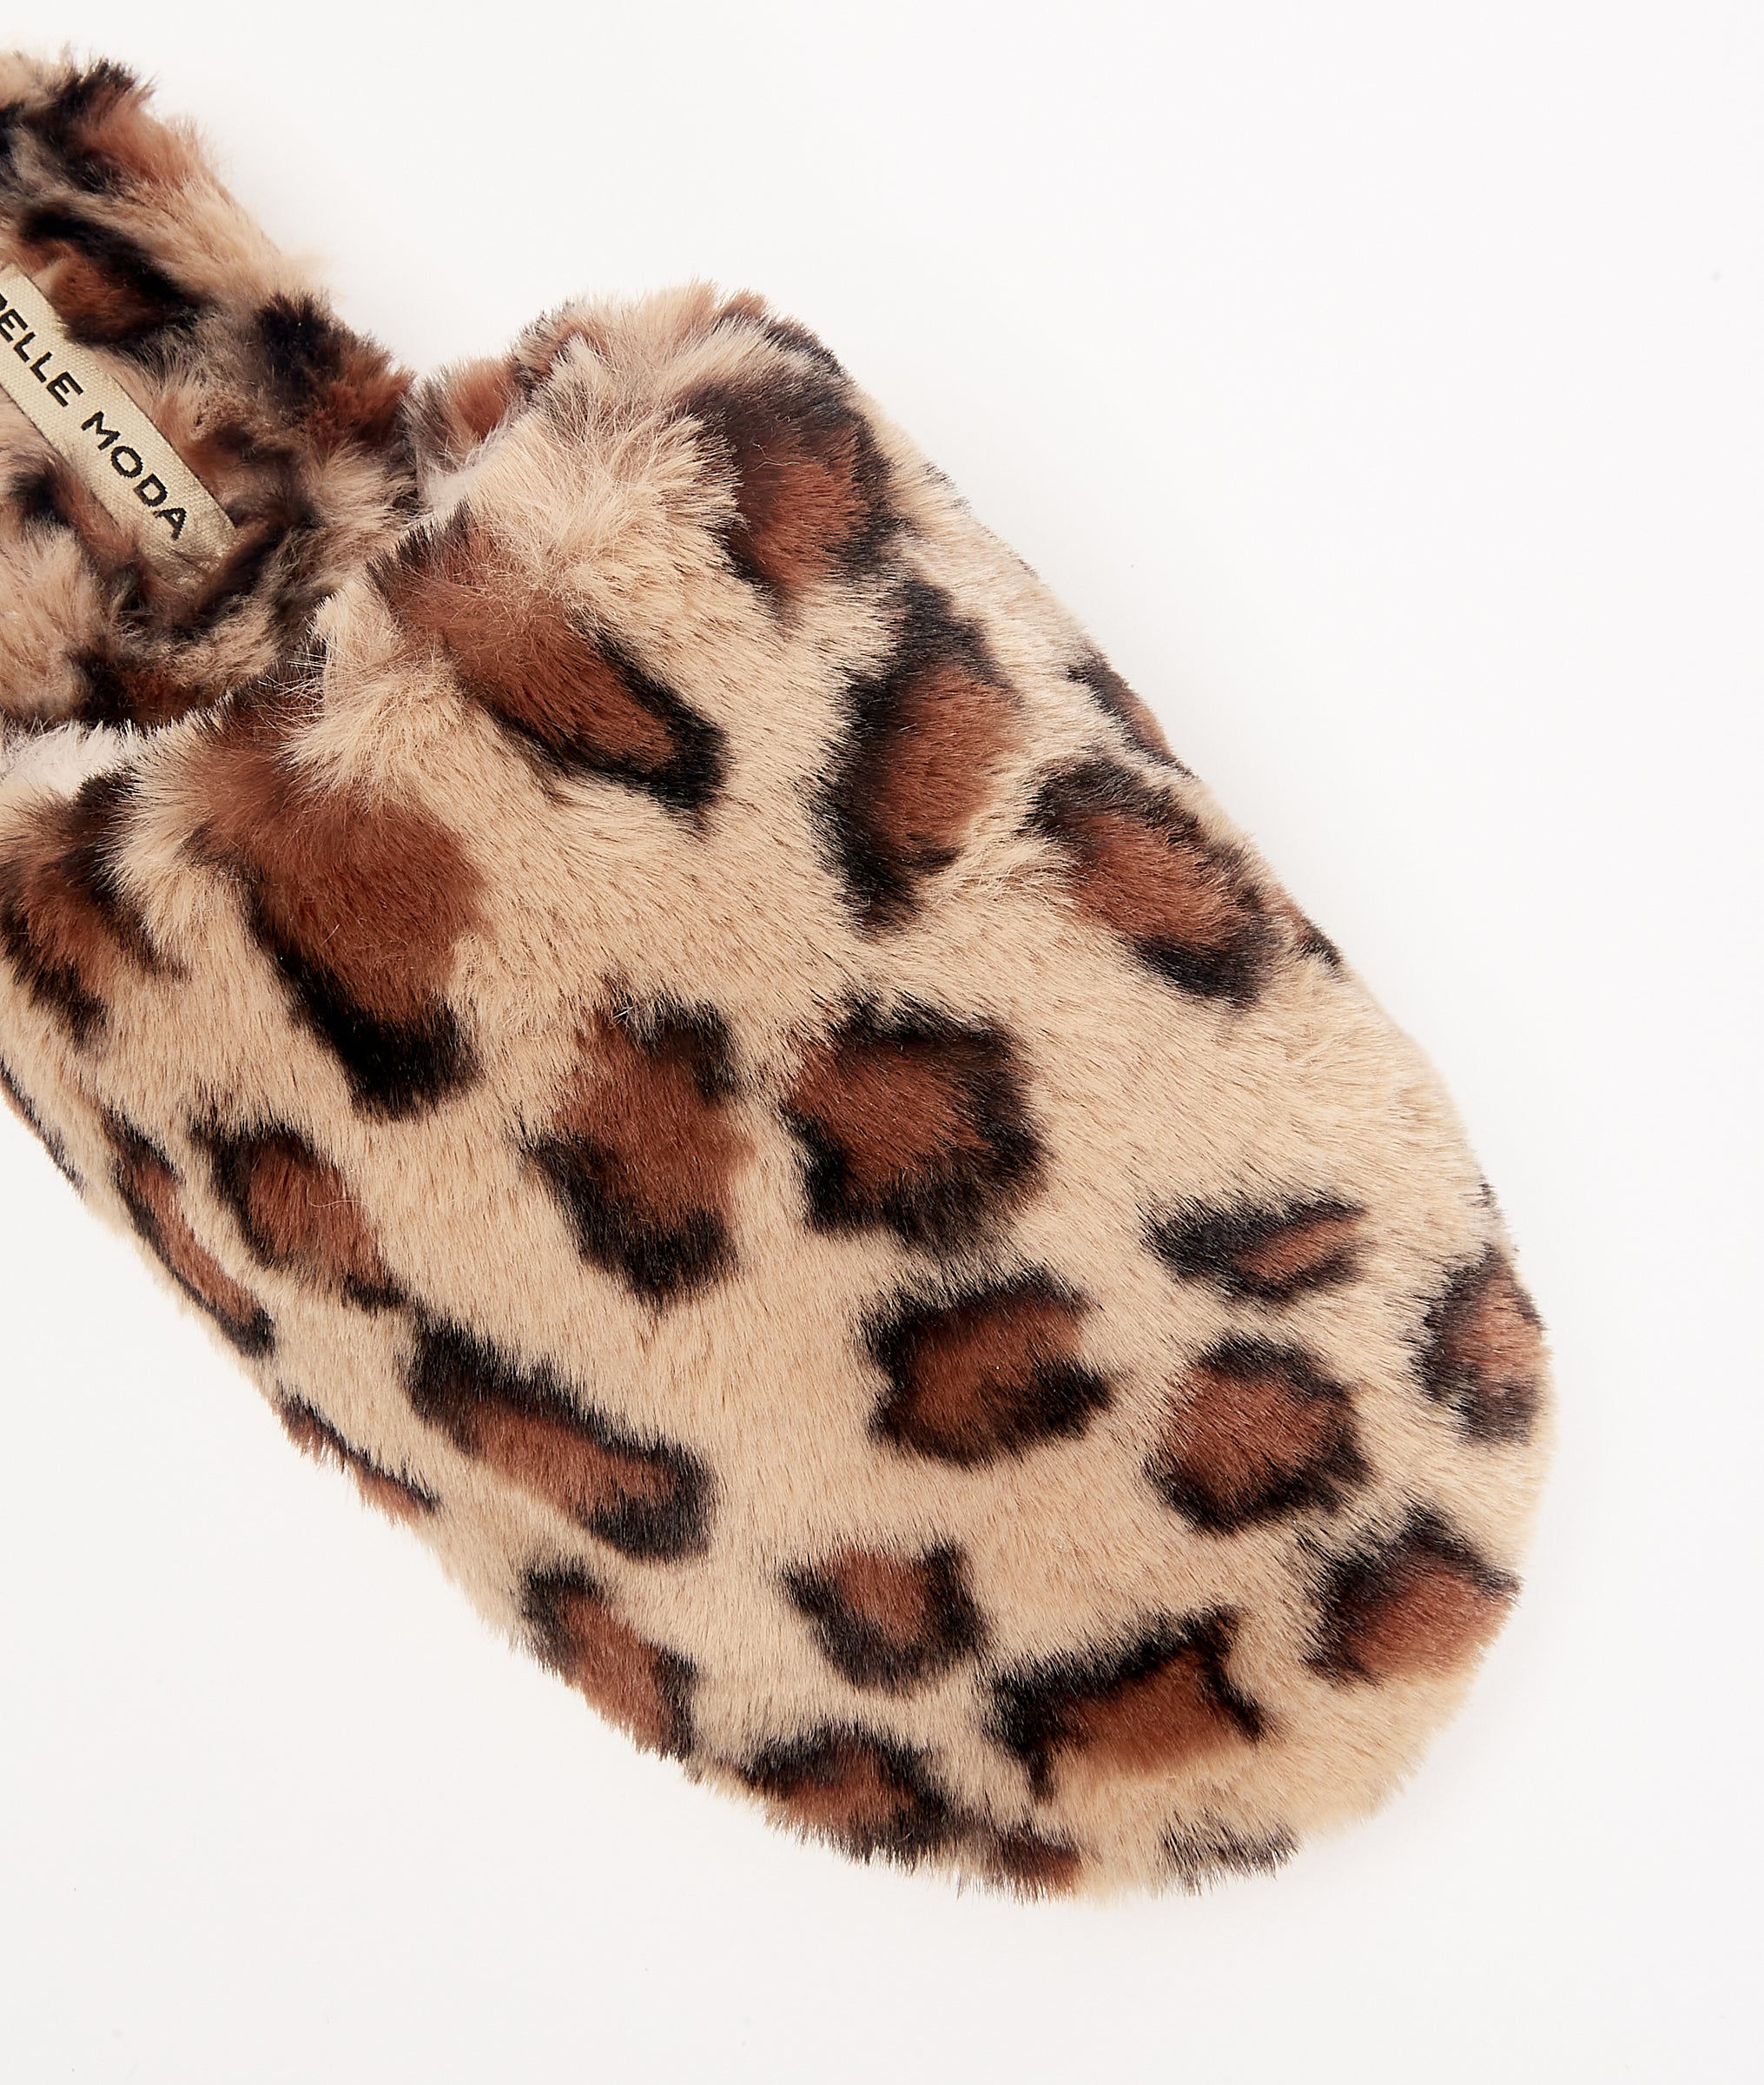 Comfy Slipper - Tan Leopard